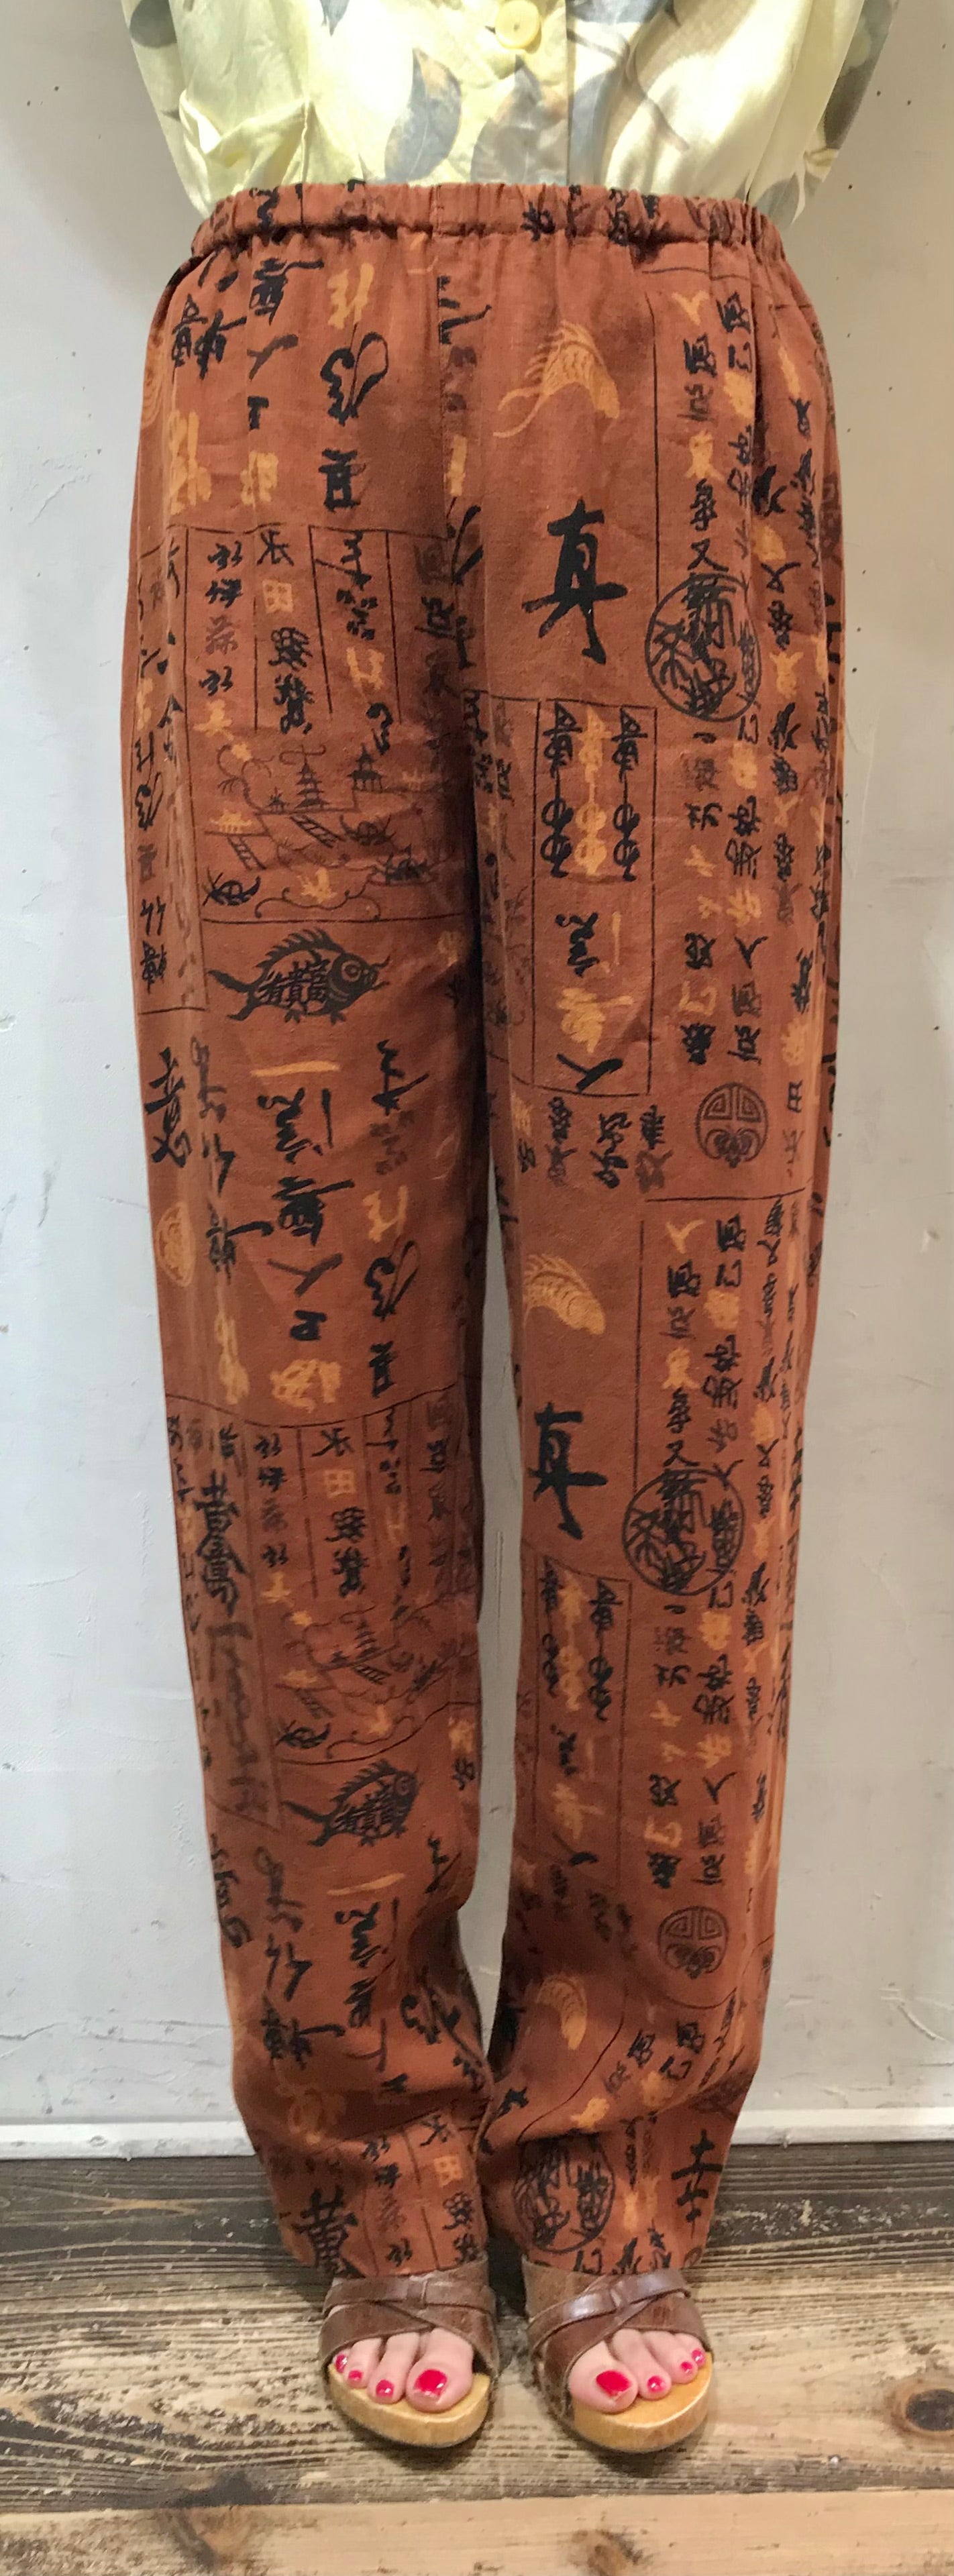 Vintage Linen Pants 〜CHICO’S DESIGN〜 [H24720]